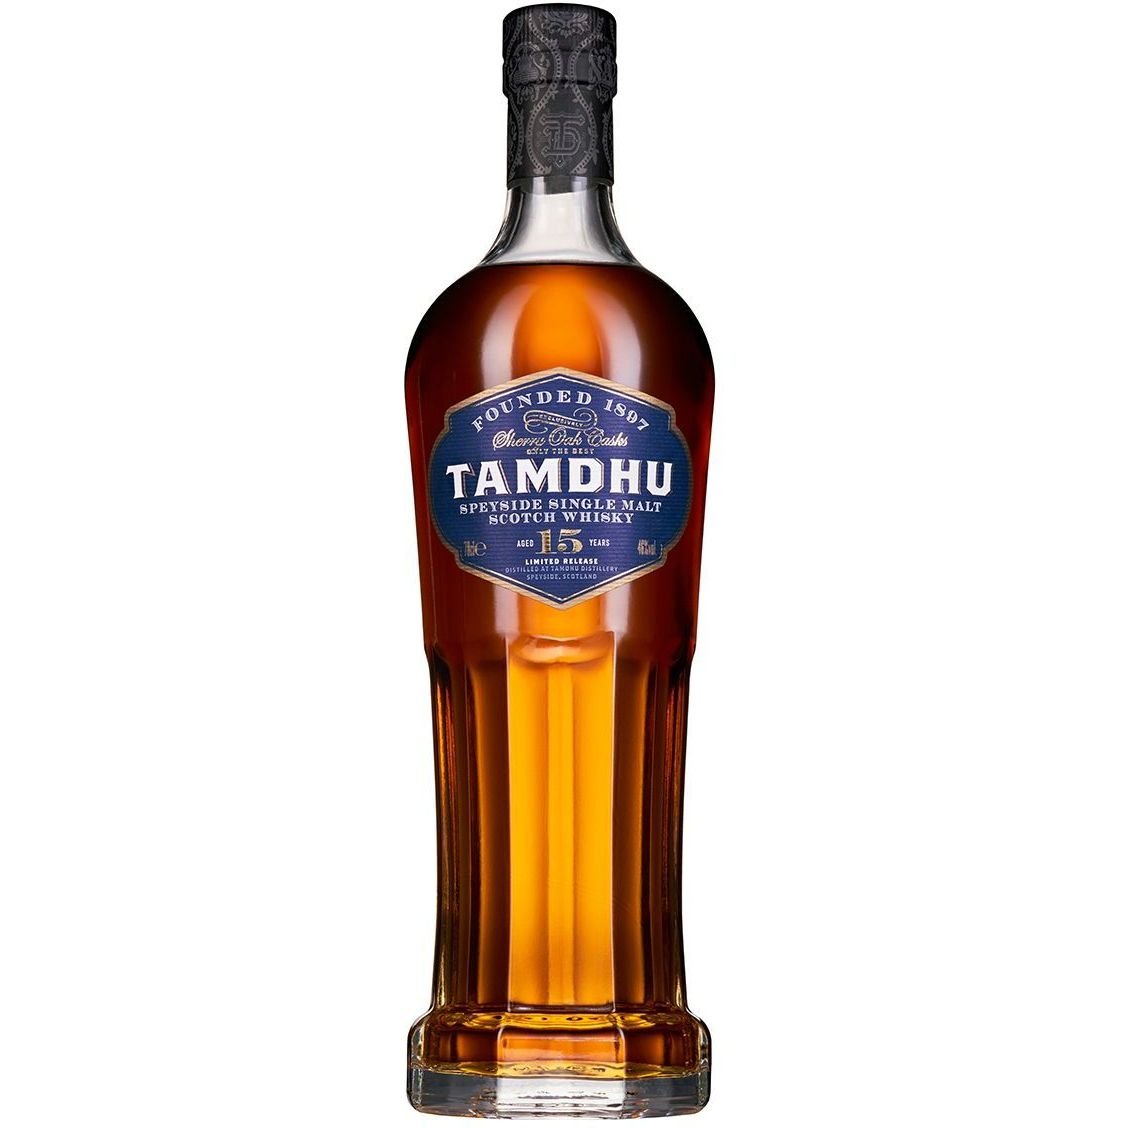 Віскі Tamdhu 15 yo Single Malt Scotch Whisky 46% 0.7 л, в подарунковій упаковці - фото 3